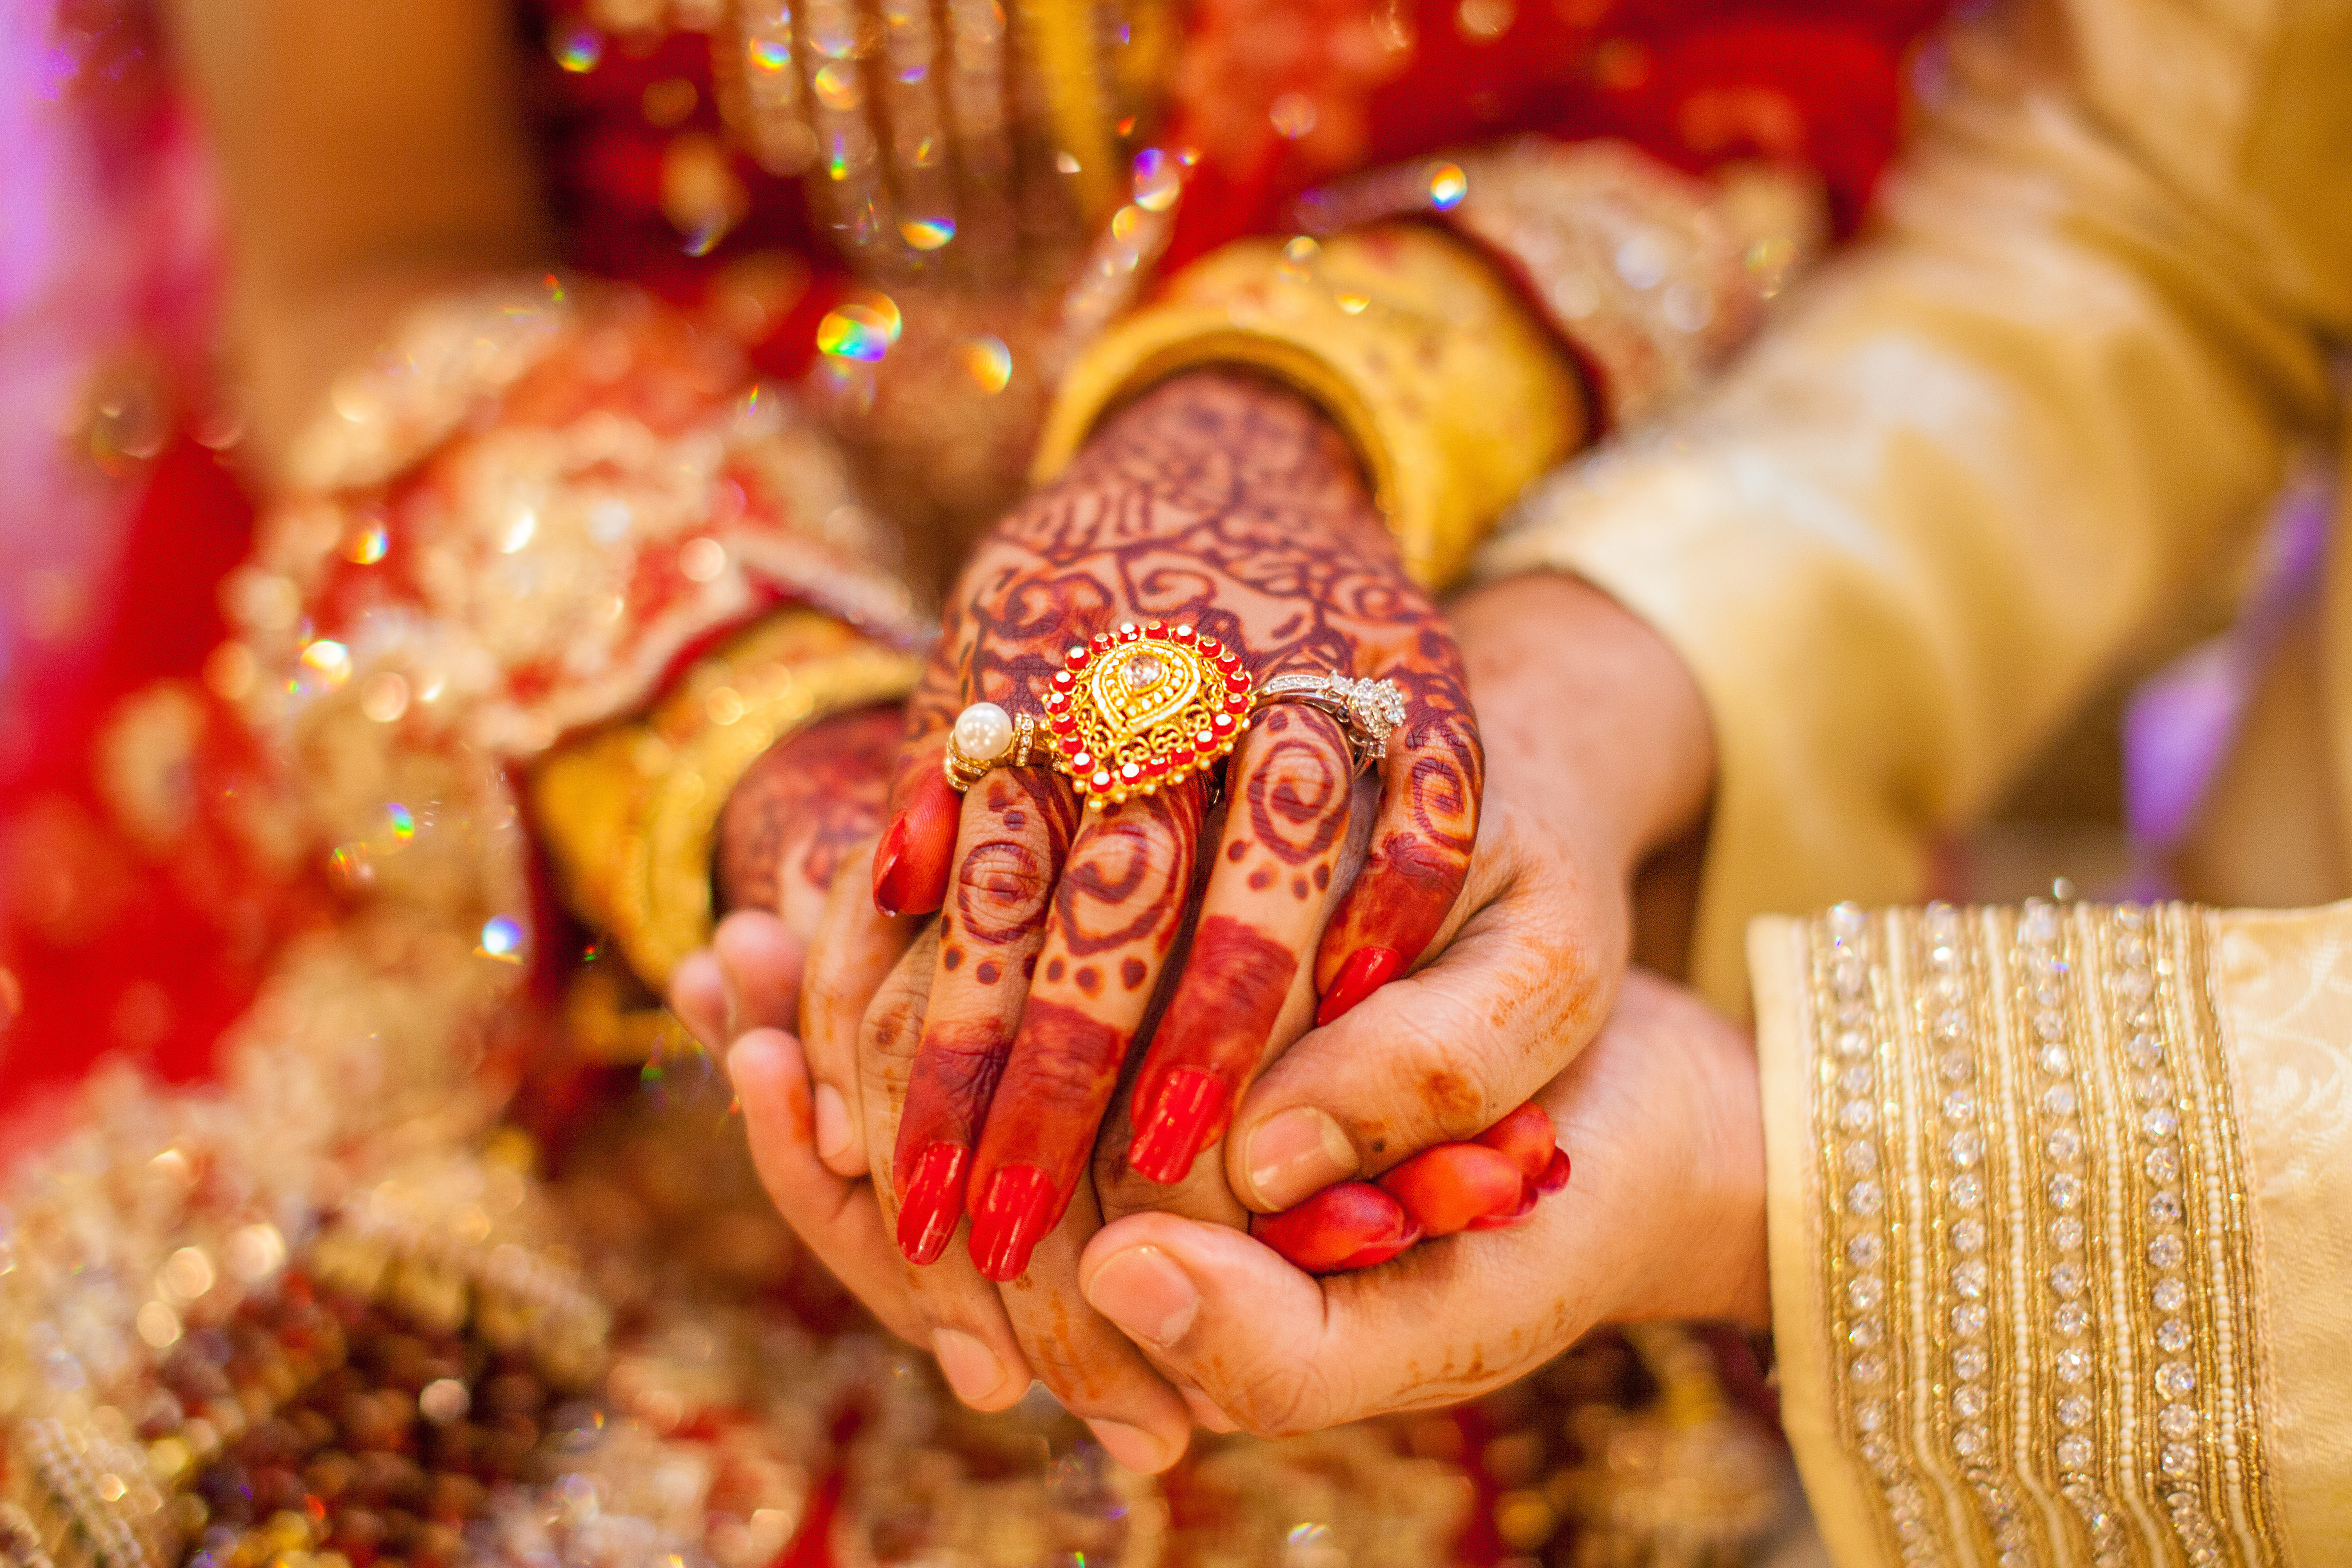 Le couple a prévu un mariage indien traditionnel. | Source : Shutterstock